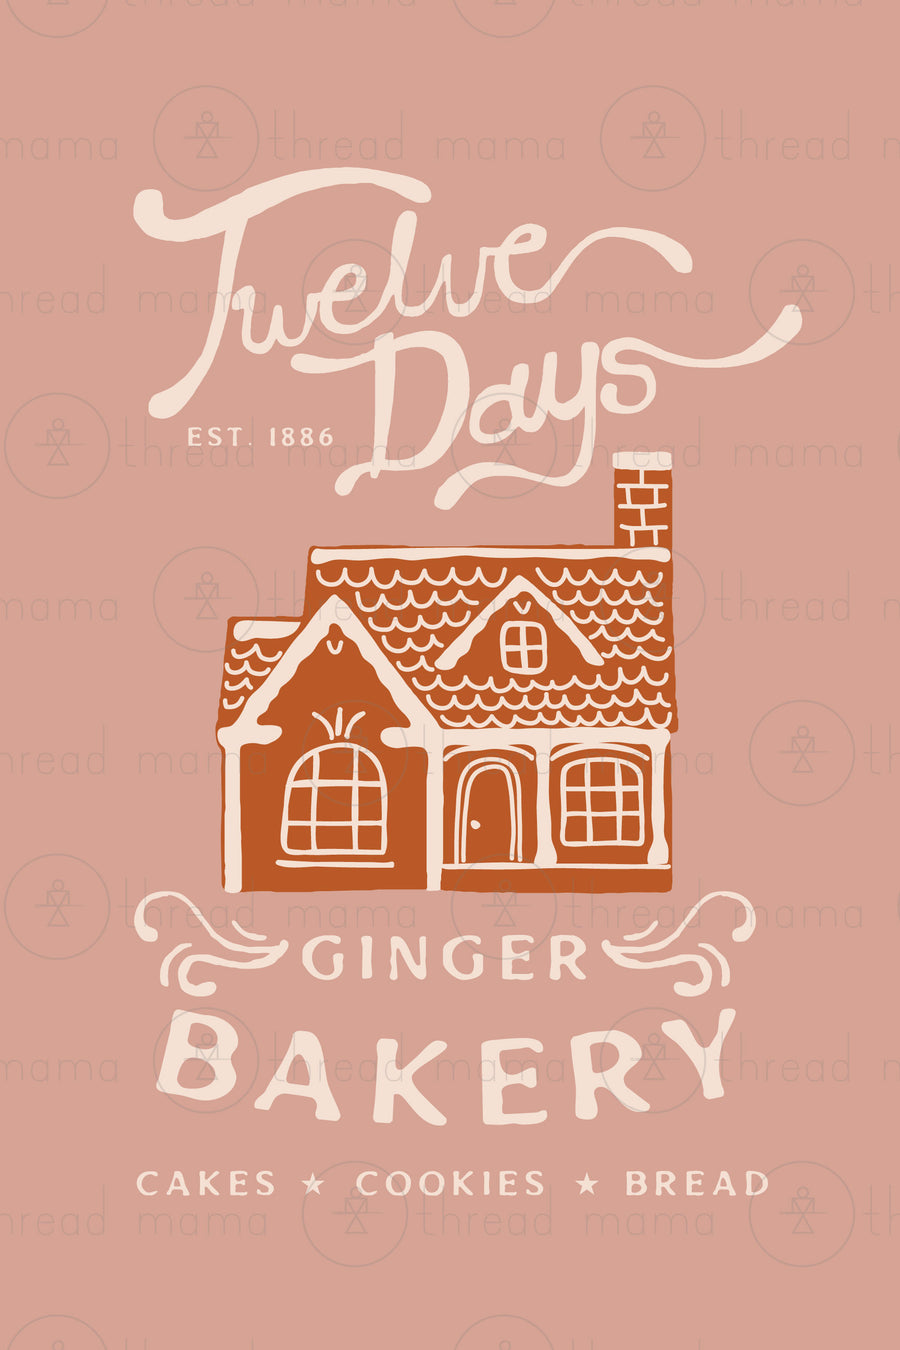 12 Days Ginger Bakery - Set